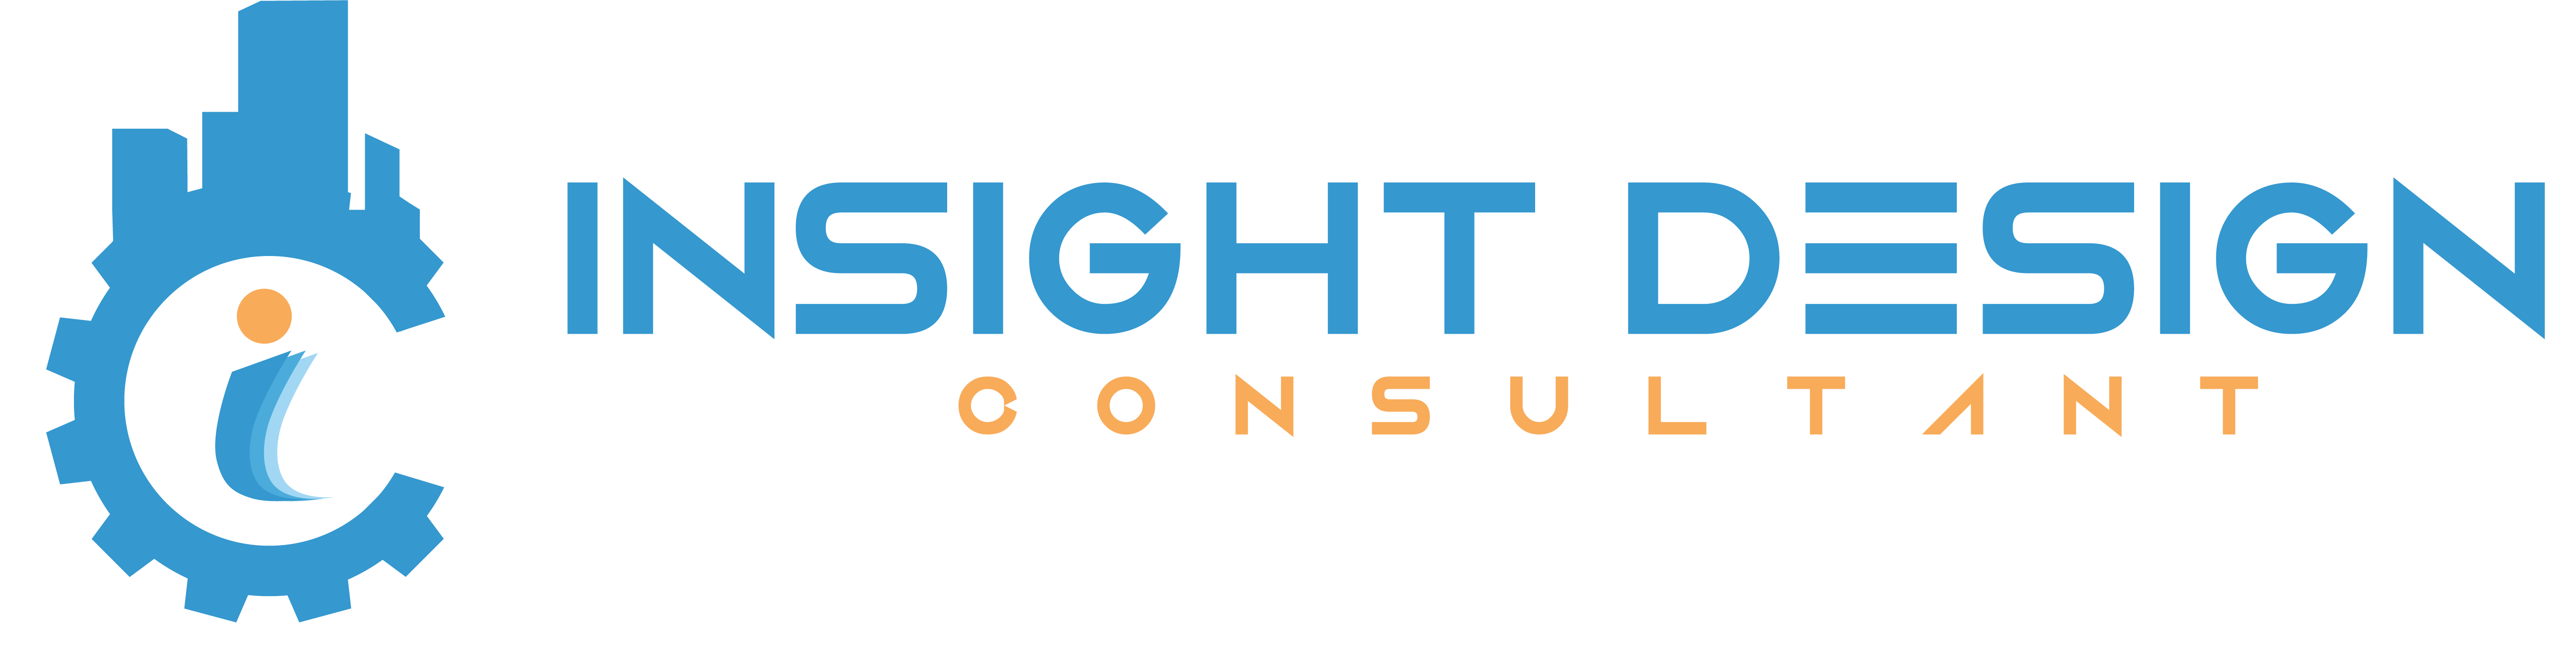 Insight Design Consultant Logo